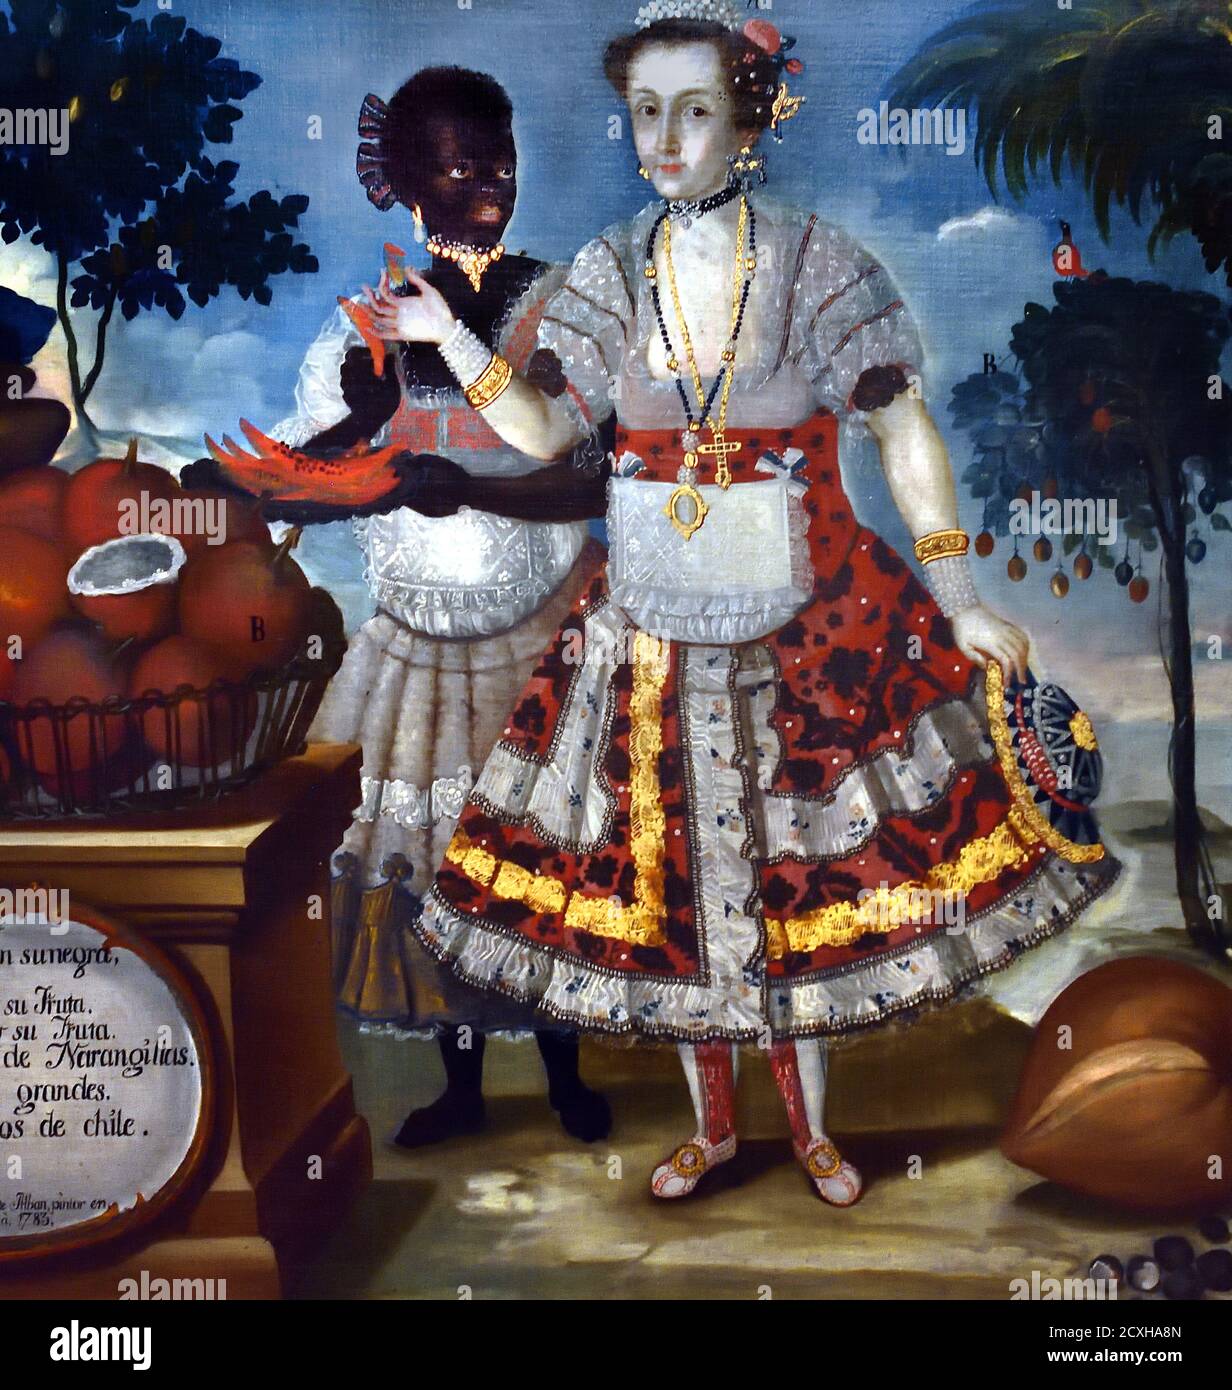 Signora spagnola con la sua donna nera schiava di Vicente Albán 1783 America, americana, ( nel 1783 il pittore ecuadoriano Vicente Albán dipinse rappresentando i tipi di corpo umano presi dalla società locale. Vestita e adornata alla moda del tempo nell'udienza reale di Quito ) Vinciente Albán nato nel 1725 a Quito, Ecuador, è stato un pittore ecuadoriano di indigeni (Yumbo People) e Criolos ispanici nei loro abiti nativi', Ecuador, Foto Stock